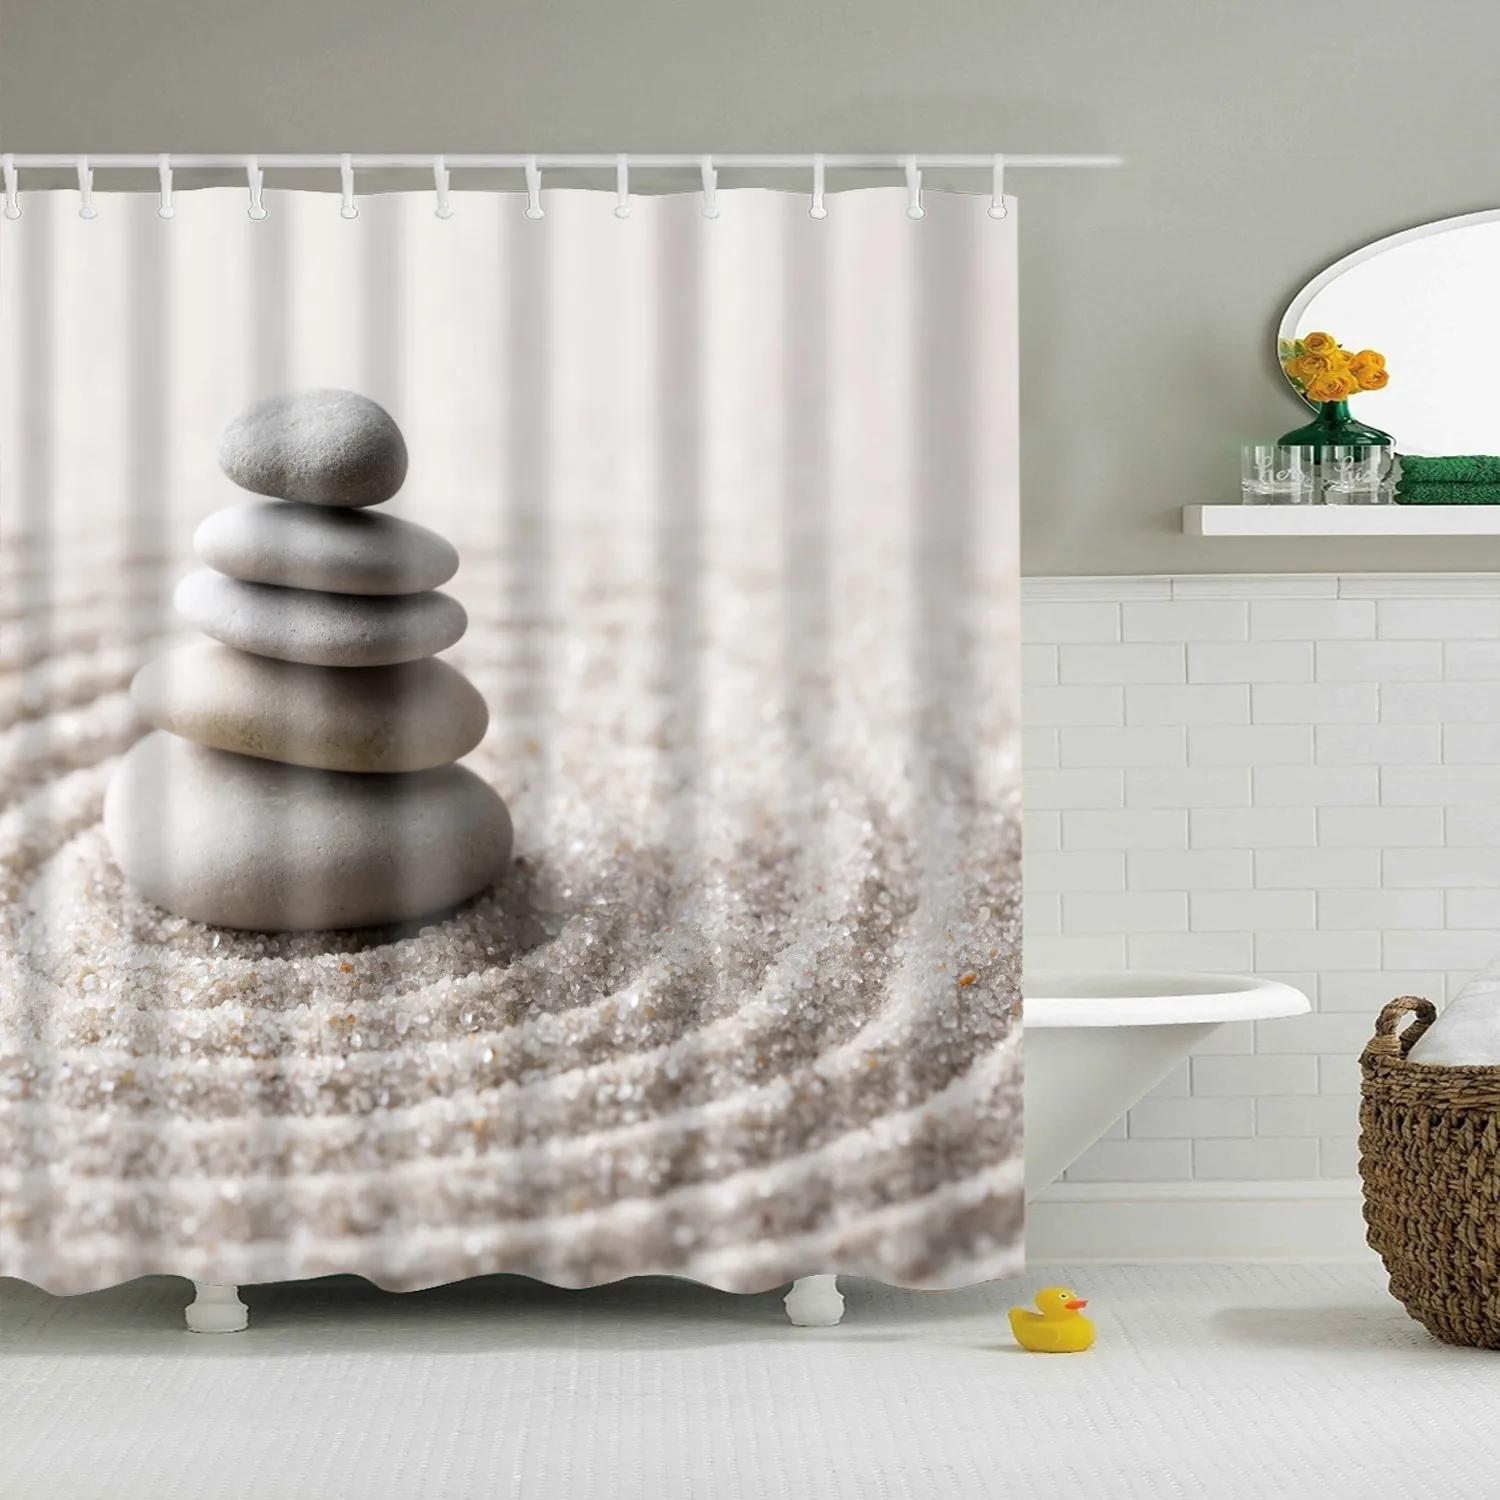 180x200 см индийский Bodhisattva 3D занавеска для ванной Водонепроницаемый полиэстер ткань затемненная Мандала занавеска для душа для ванной комнаты cortina - Цвет: TZ170913